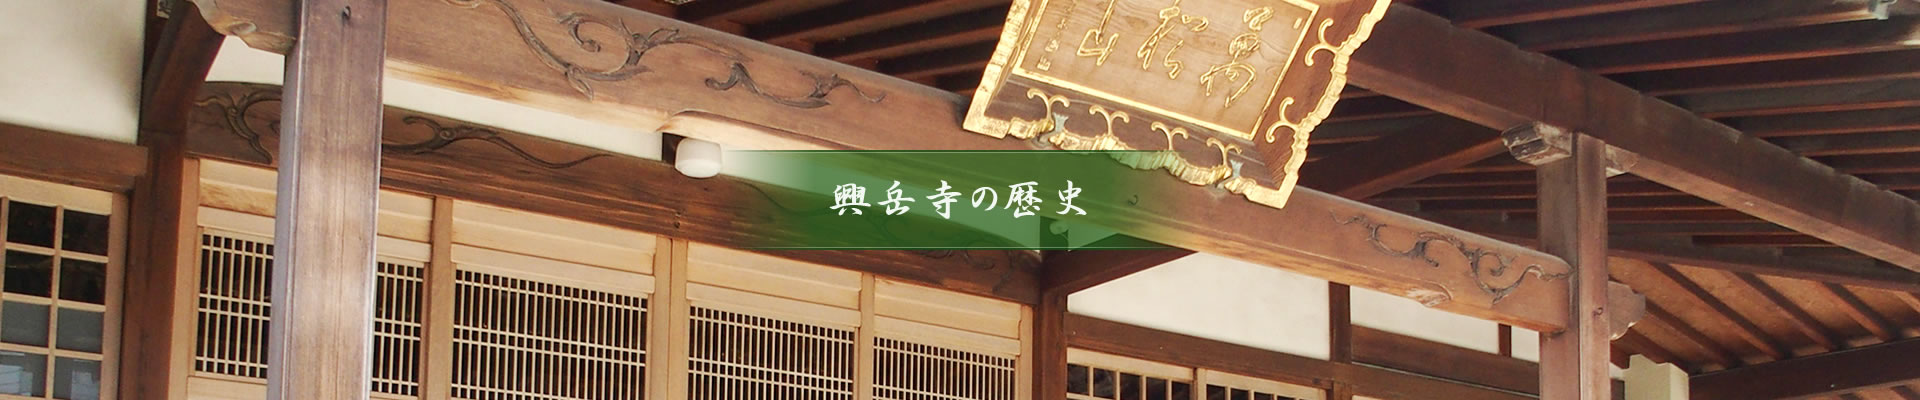 興岳寺の歴史